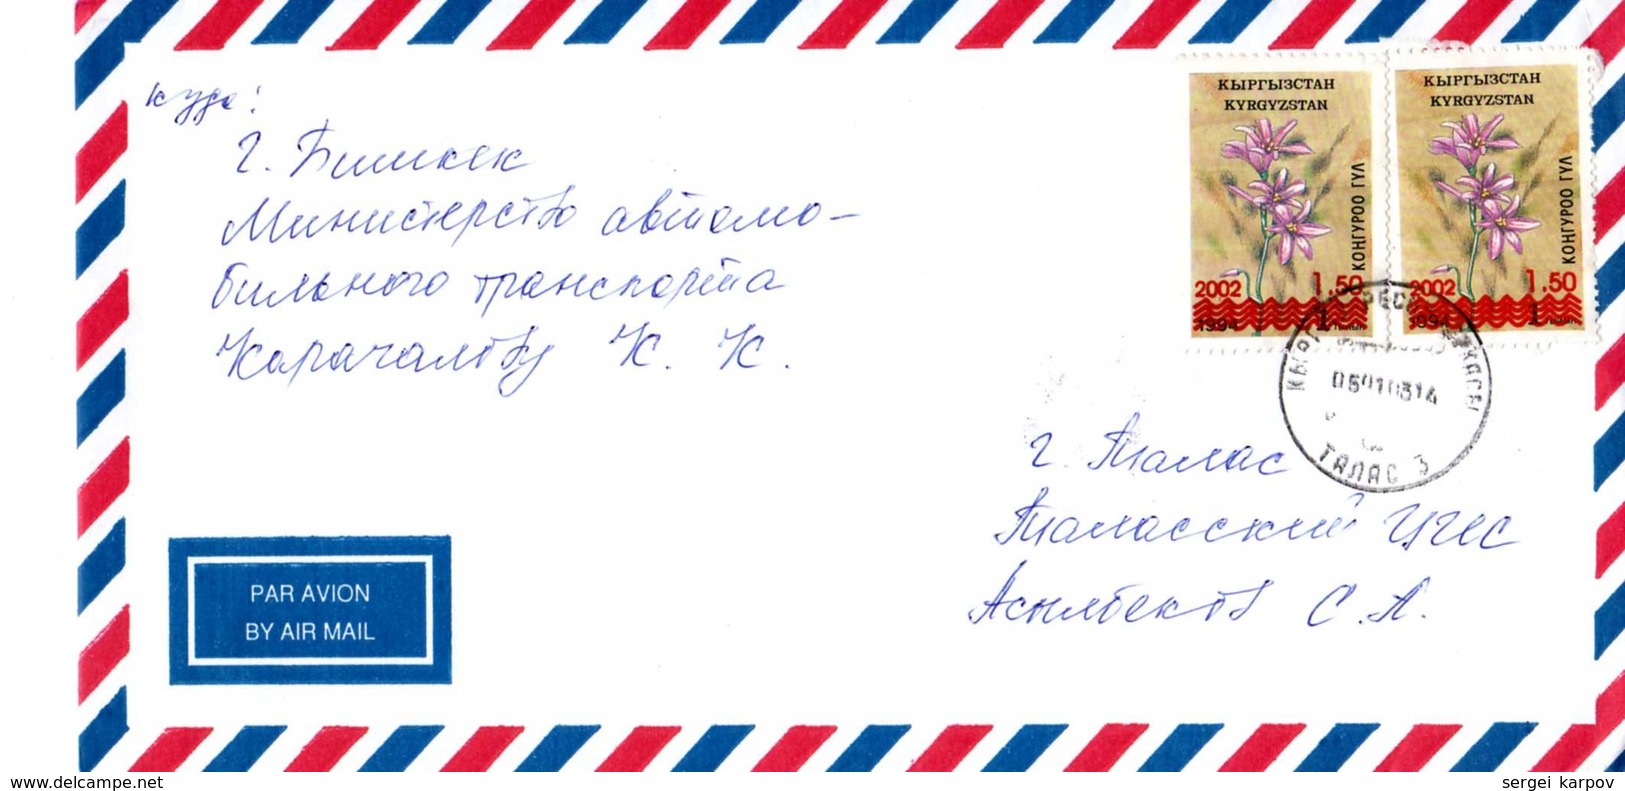 Mail: Kyrgyzstan, 01. 2003. - Kyrgyzstan